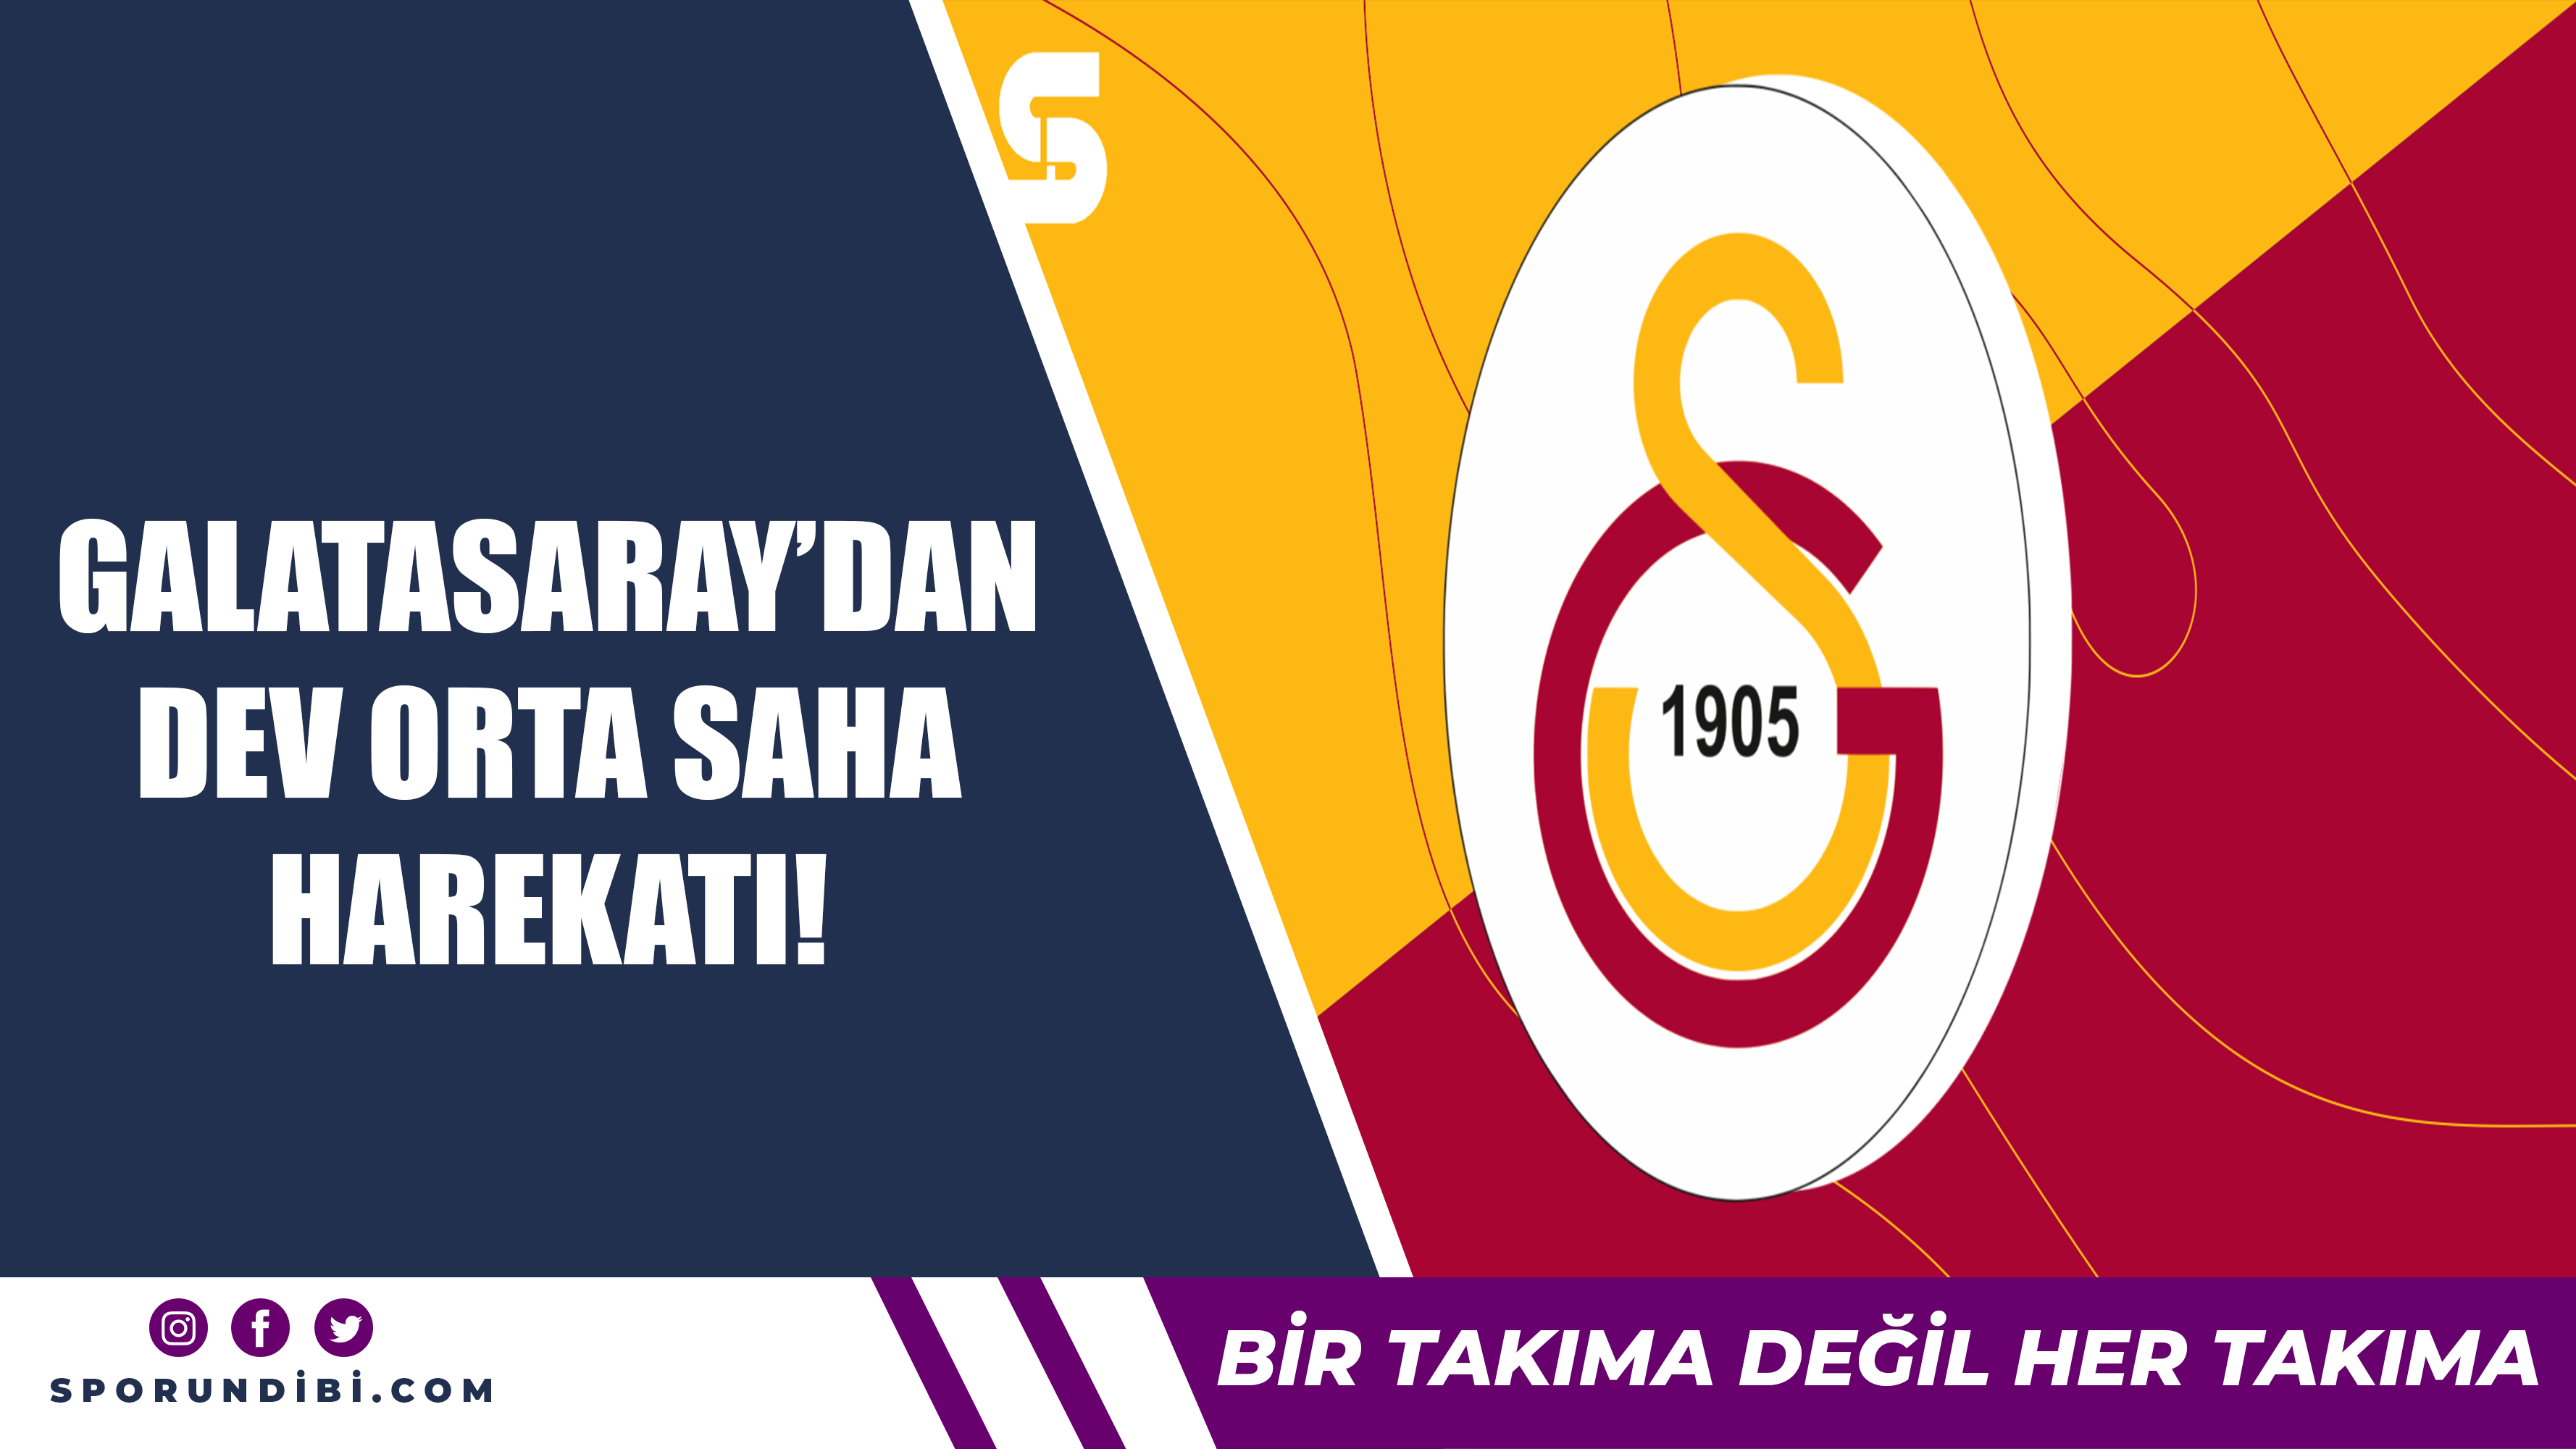 Galatasaray'dan dev orta saha harekatı!